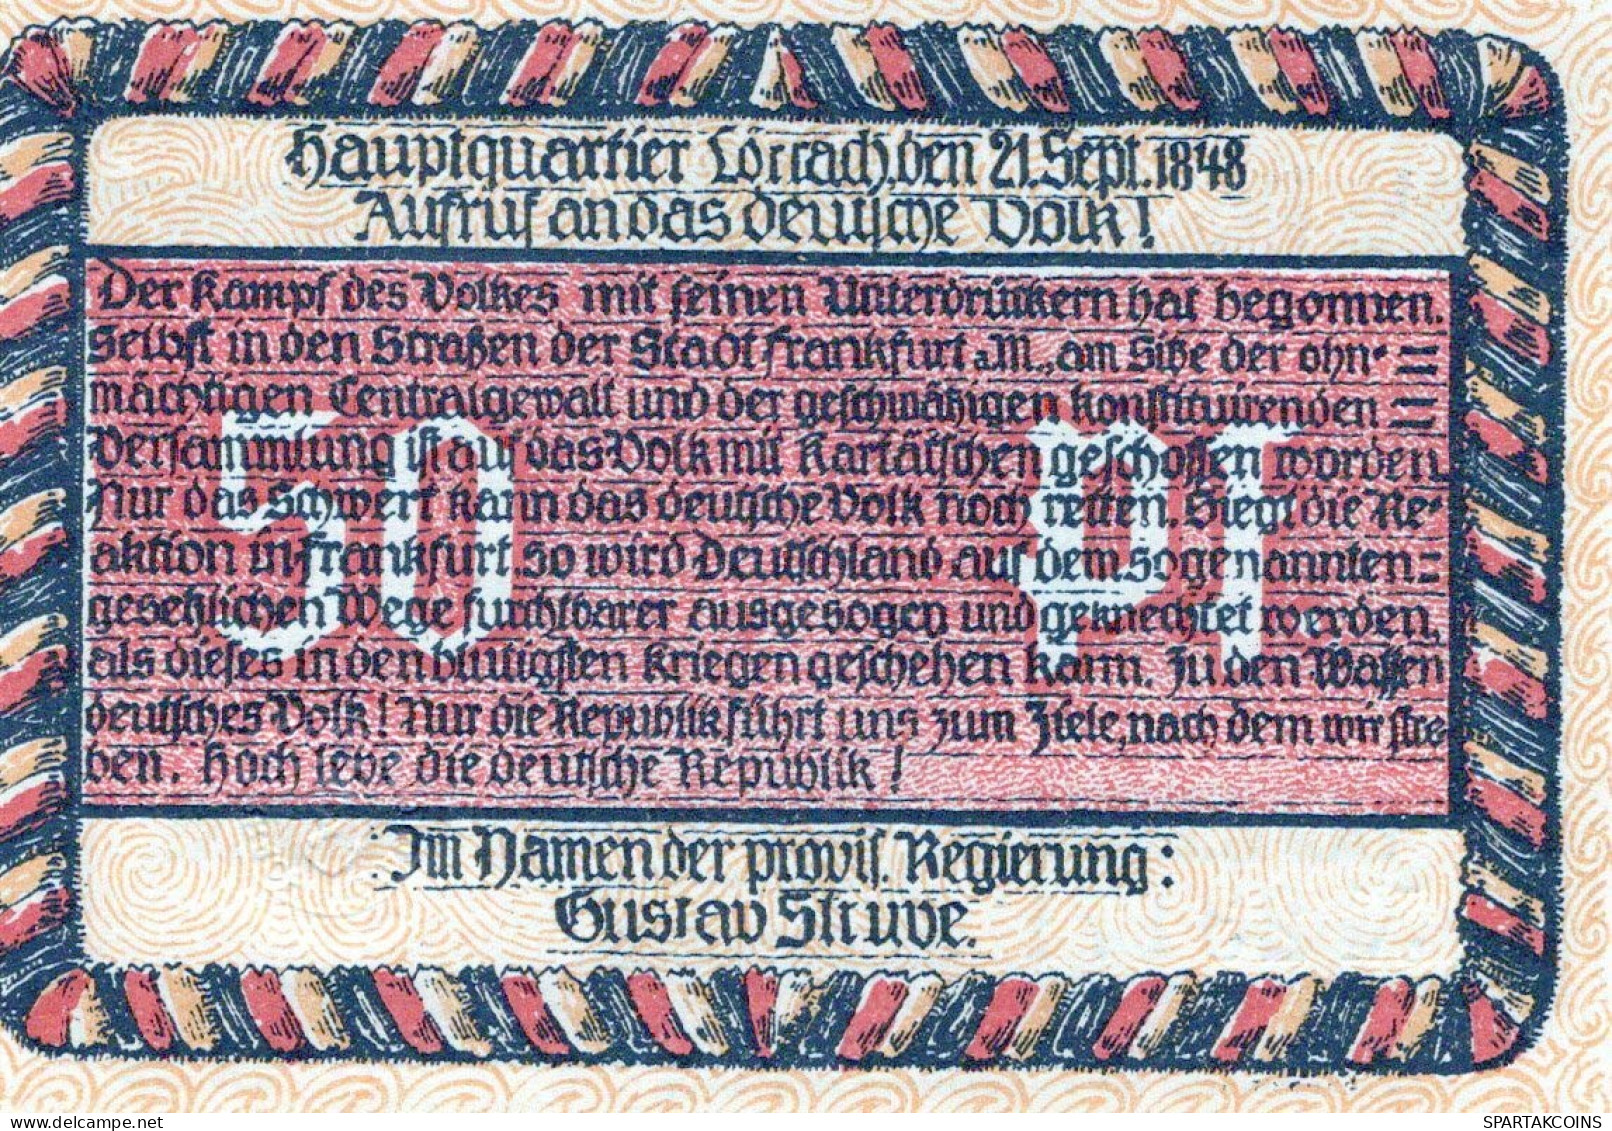 50 PFENNIG 1922 Stadt LoRRACH Baden UNC DEUTSCHLAND Notgeld Banknote #PC488 - Lokale Ausgaben